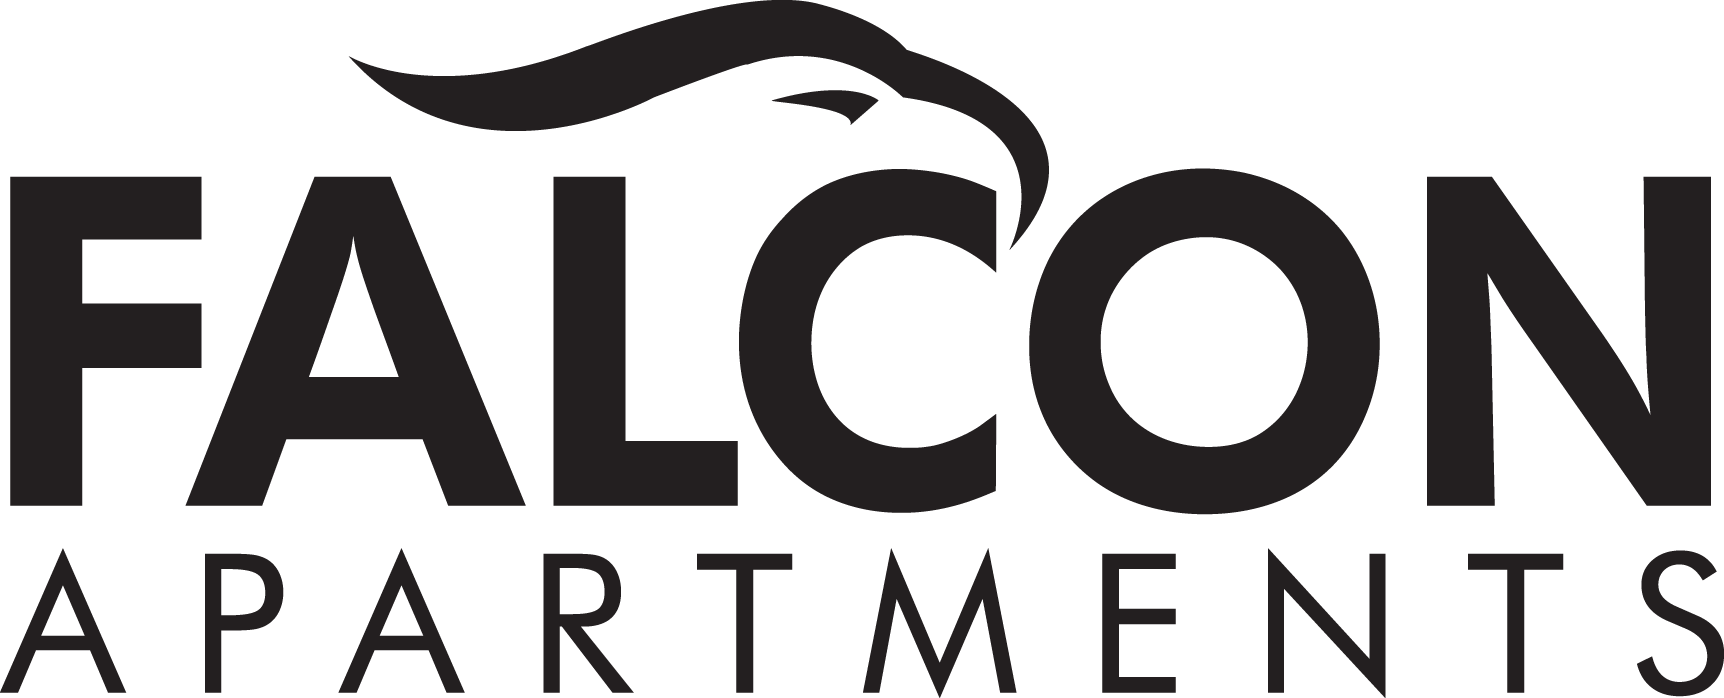 Falcon Apartments Logo